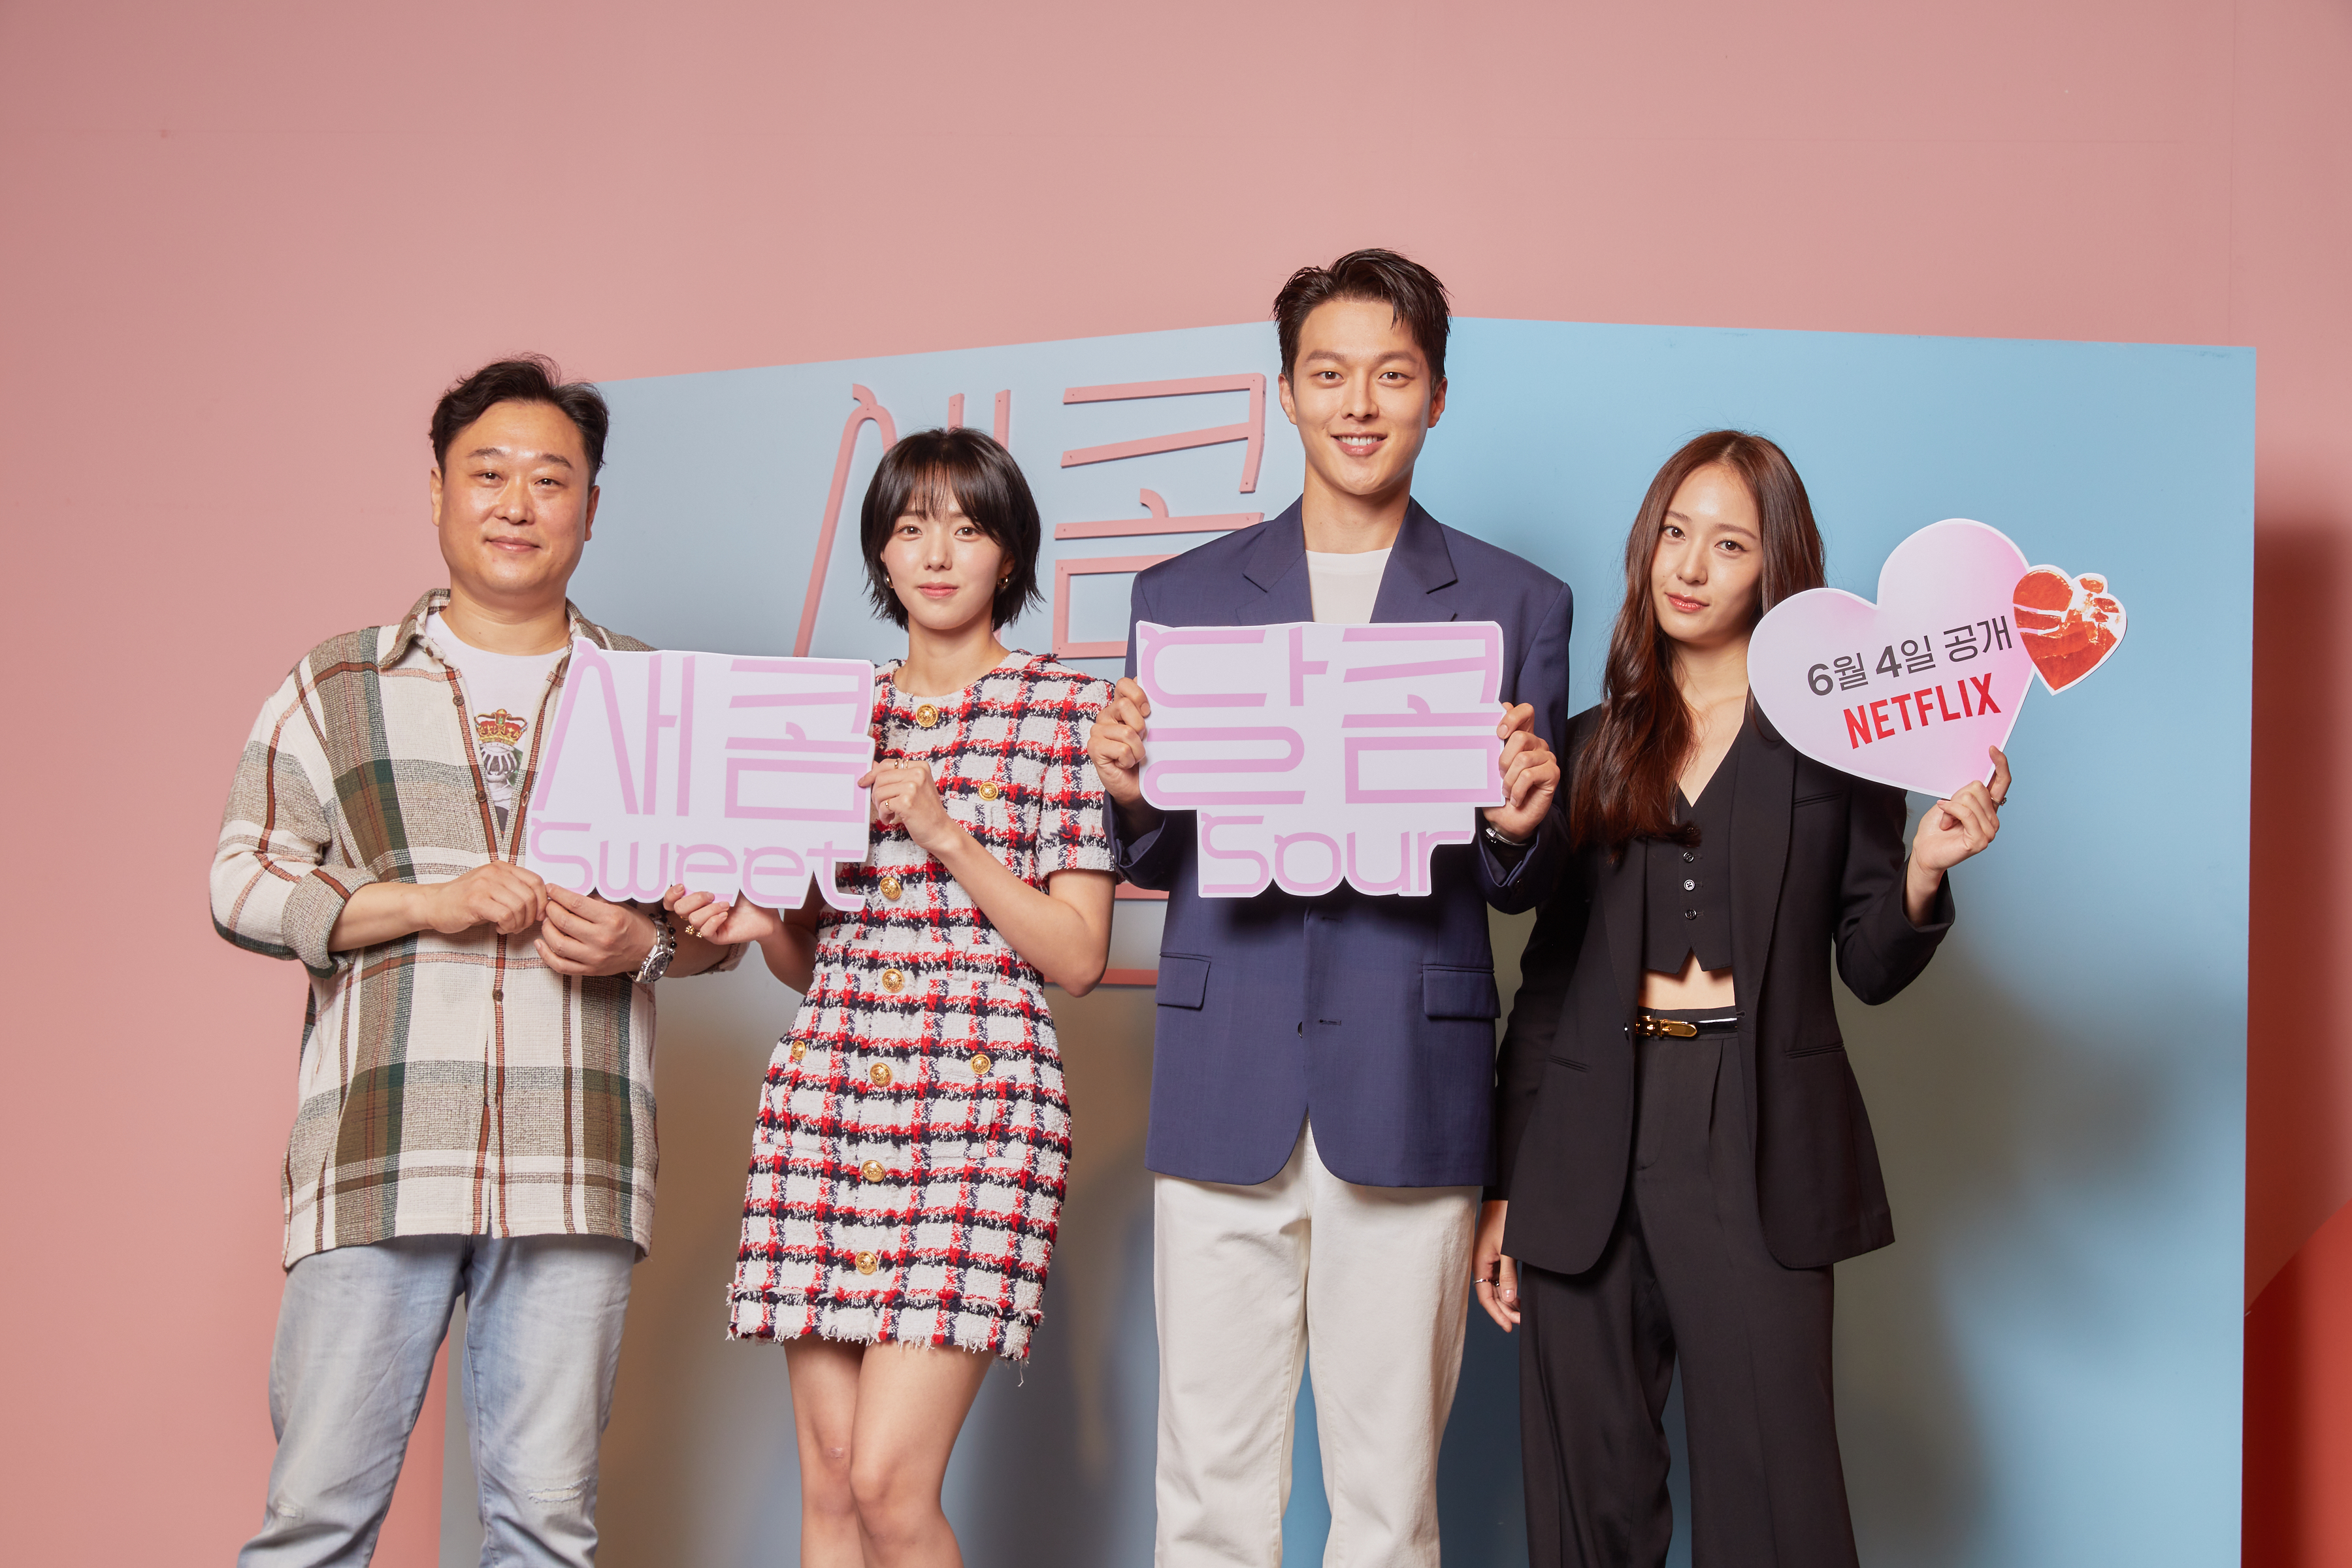 导演李桂曦（左起）、蔡秀彬、张基龙和郑秀晶一起宣传6月4日将在Netflix上线的《酸酸甜甜爱上你》，希望大家在看电影时能有所启发，并更珍惜身边的人。

